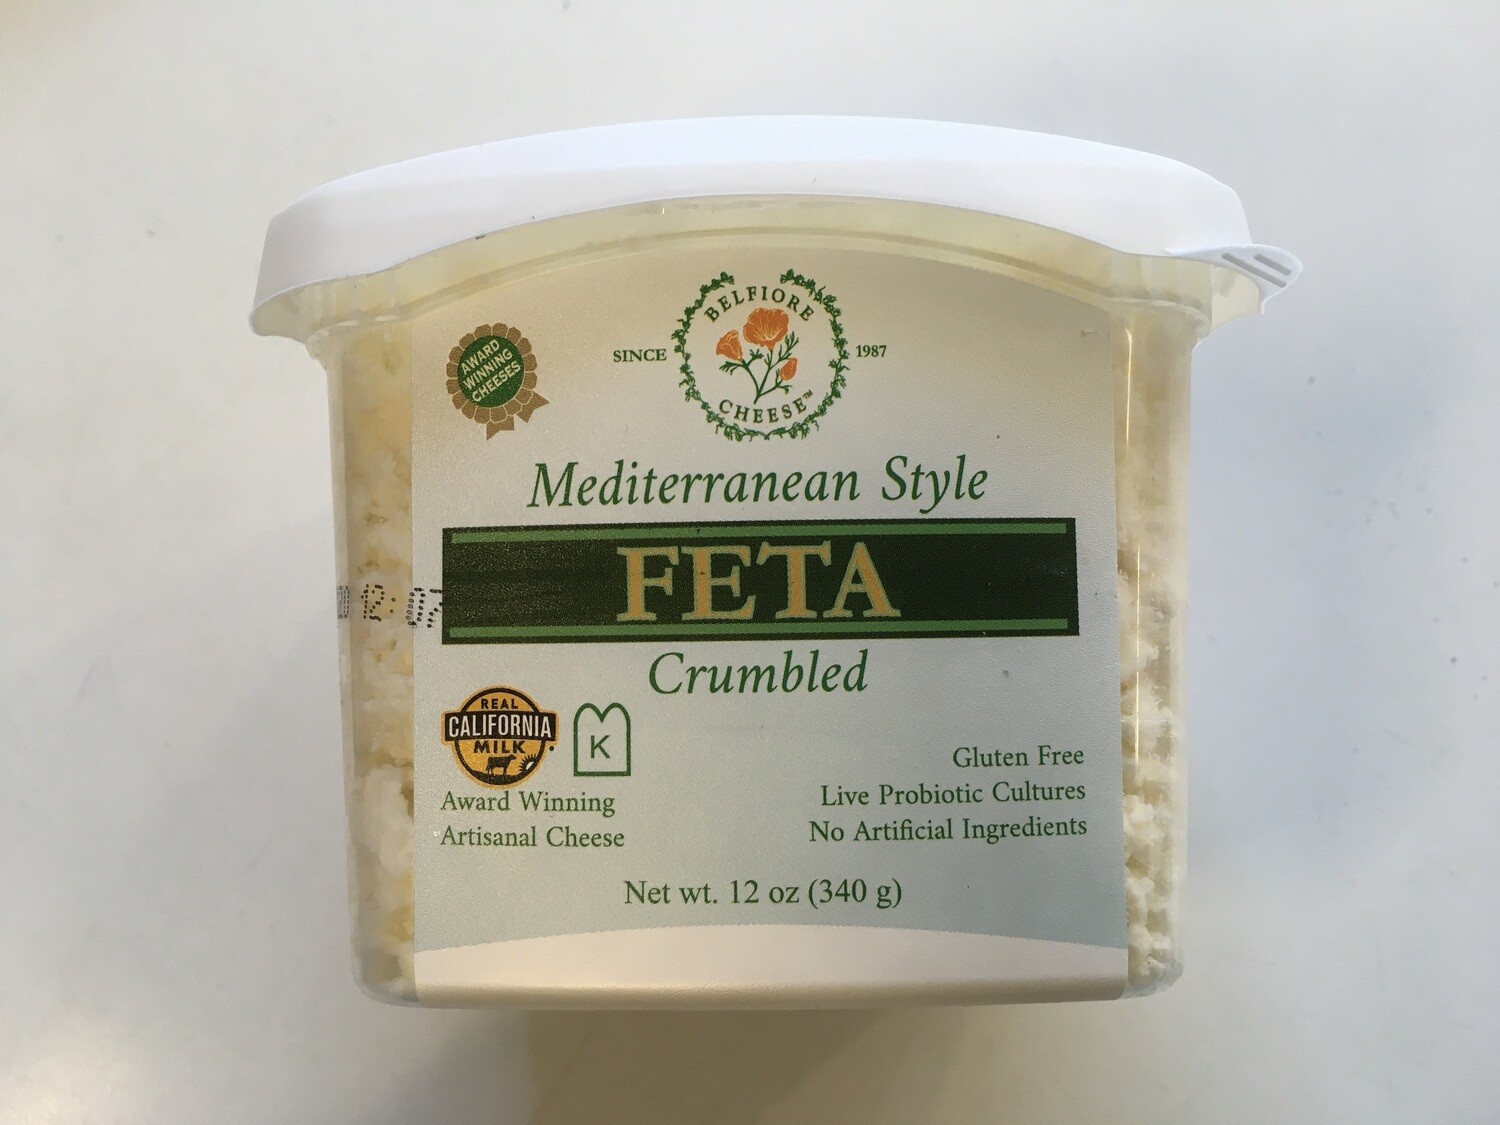 Deli / Cheese / Belfiore Crumbled Feta, 12 oz